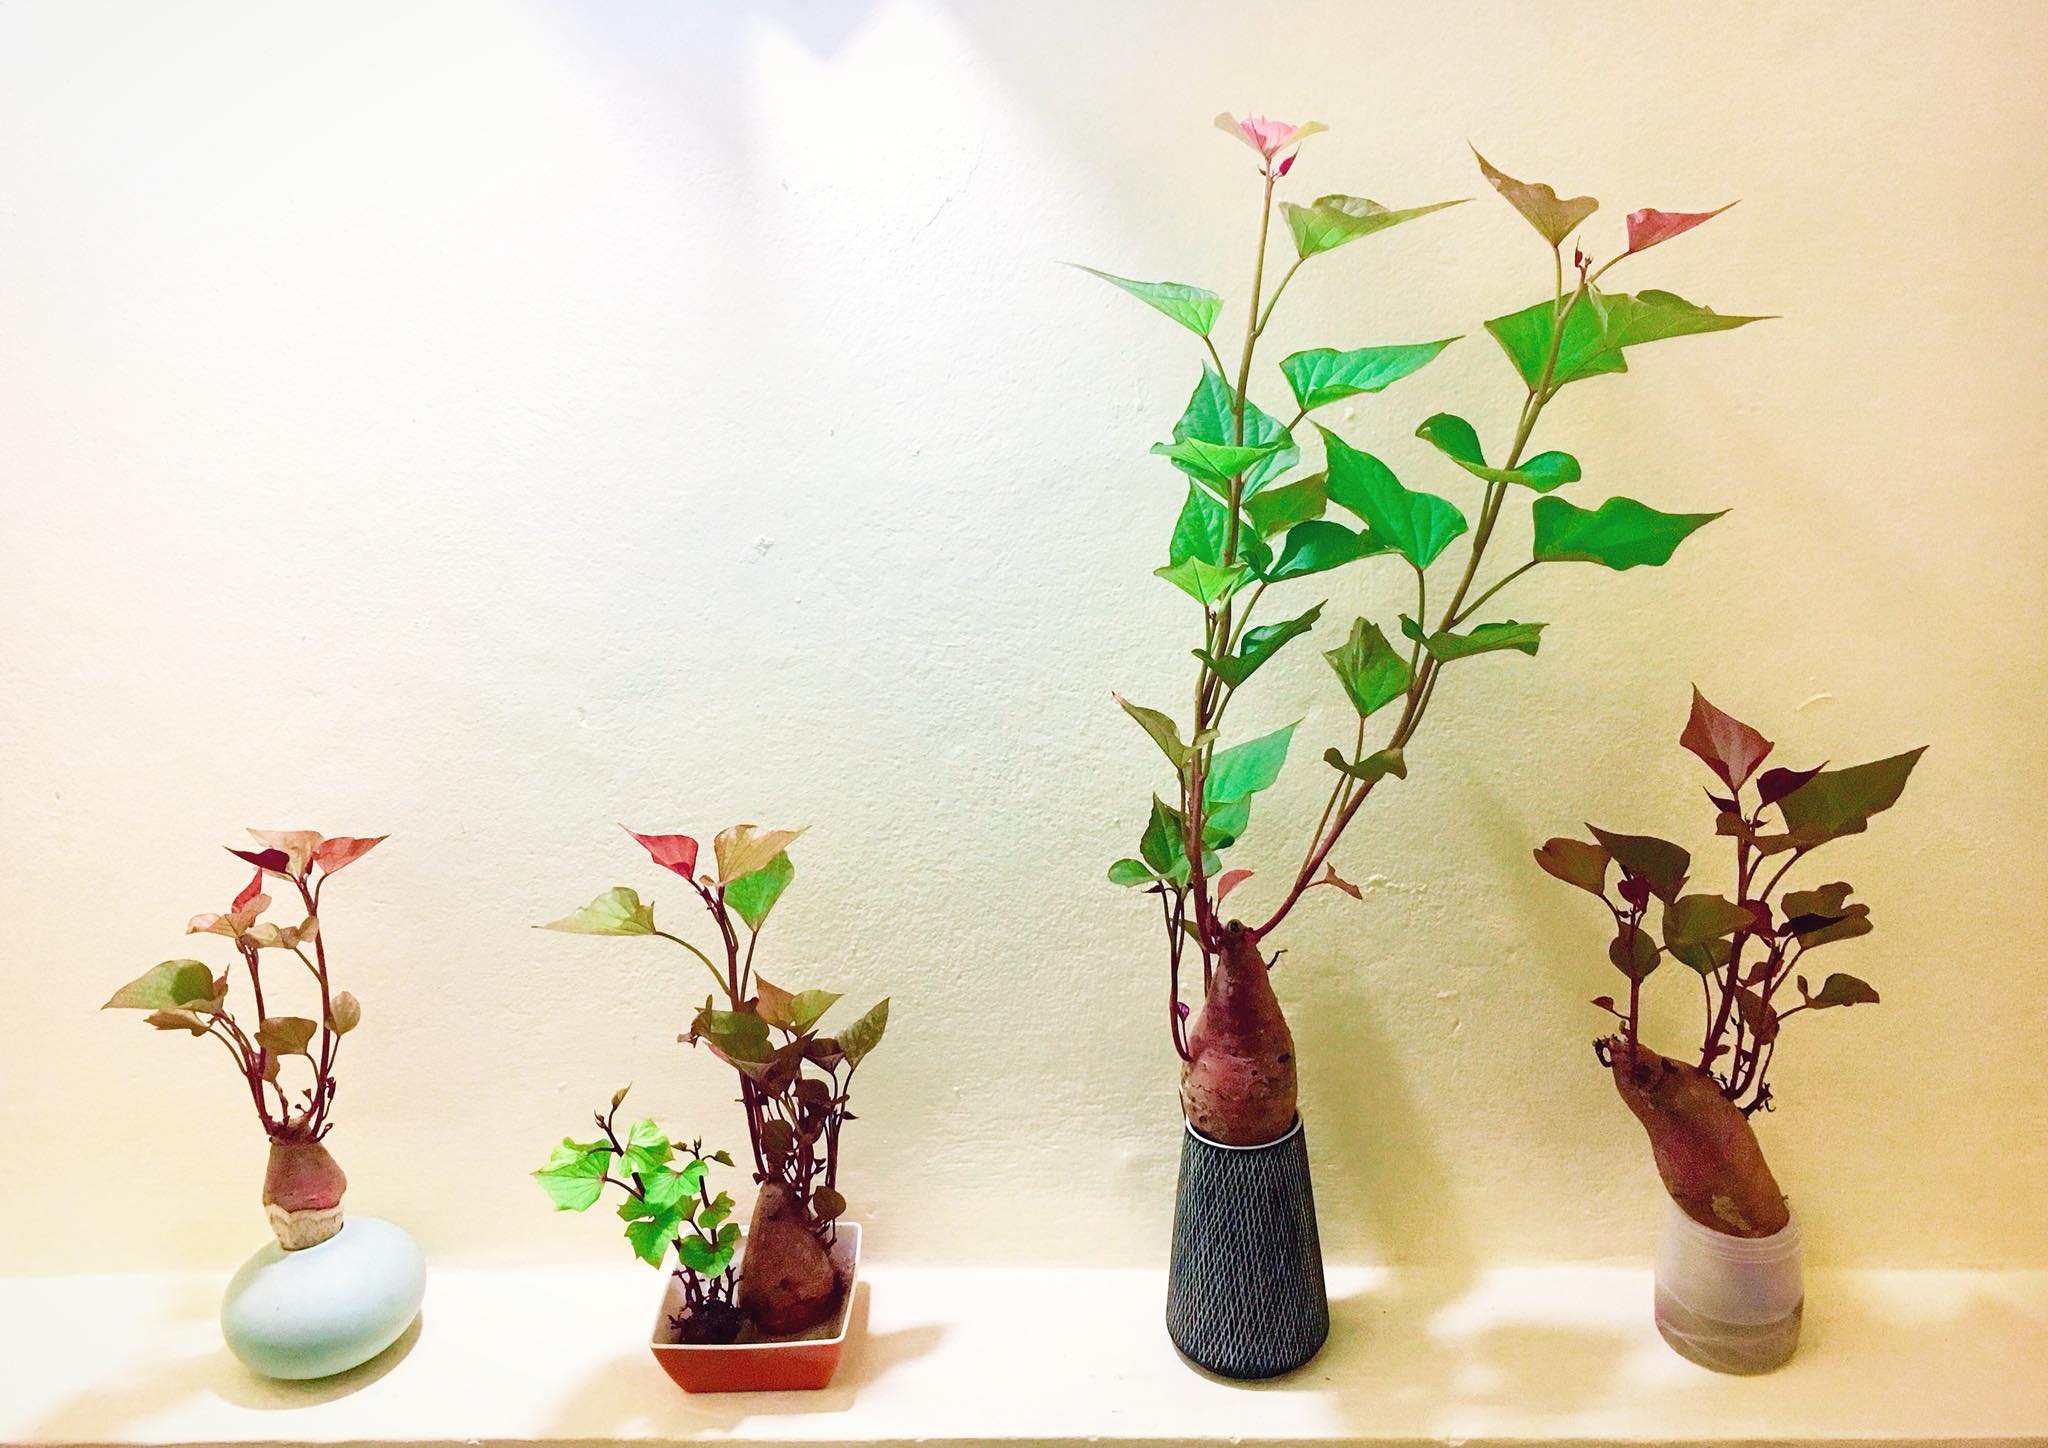  Trồng khoai lang bonsai từ củ siêu đơn giản.